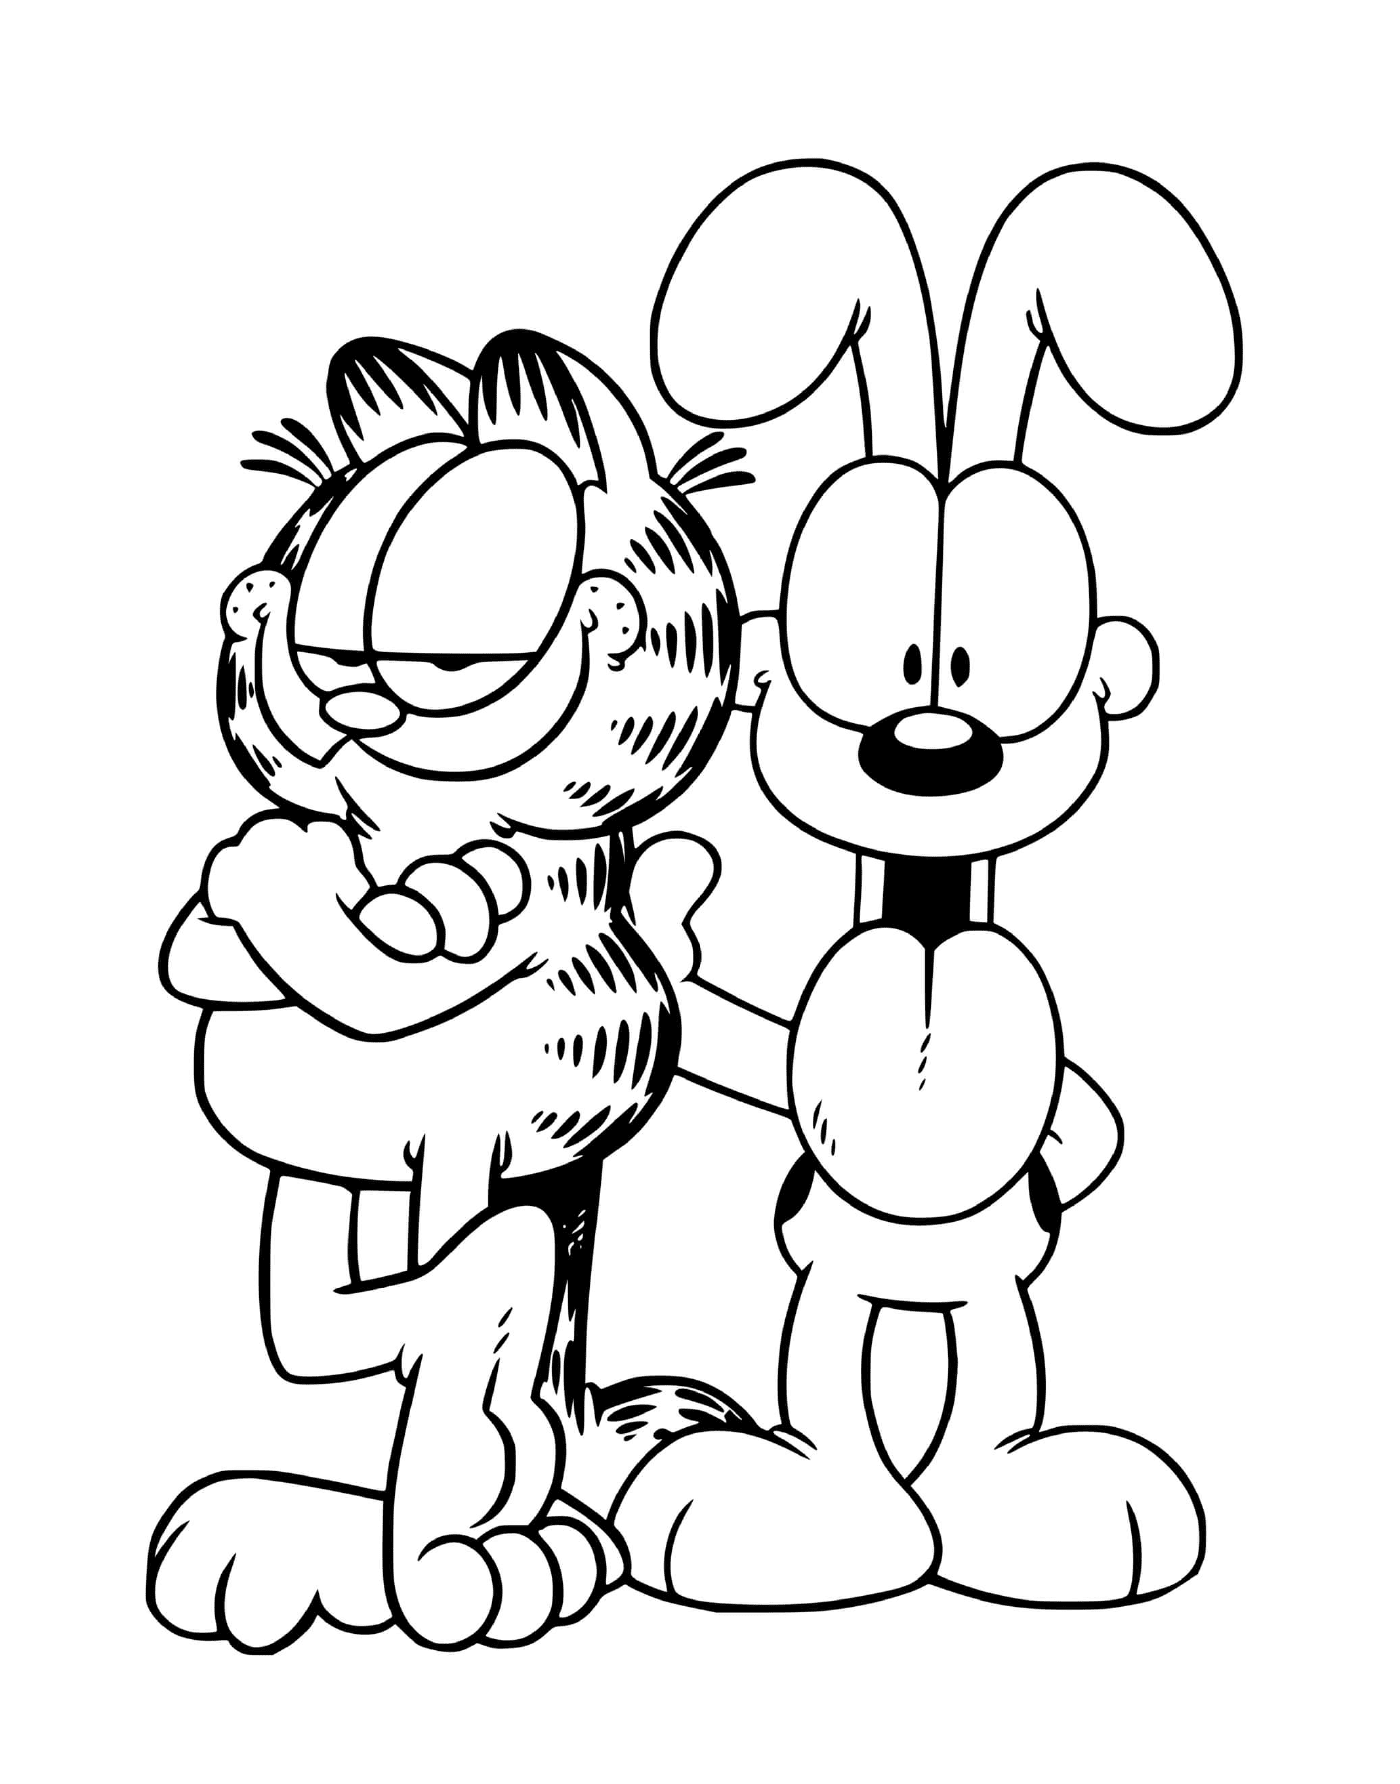  Garfield y Odie, mejores amigos 